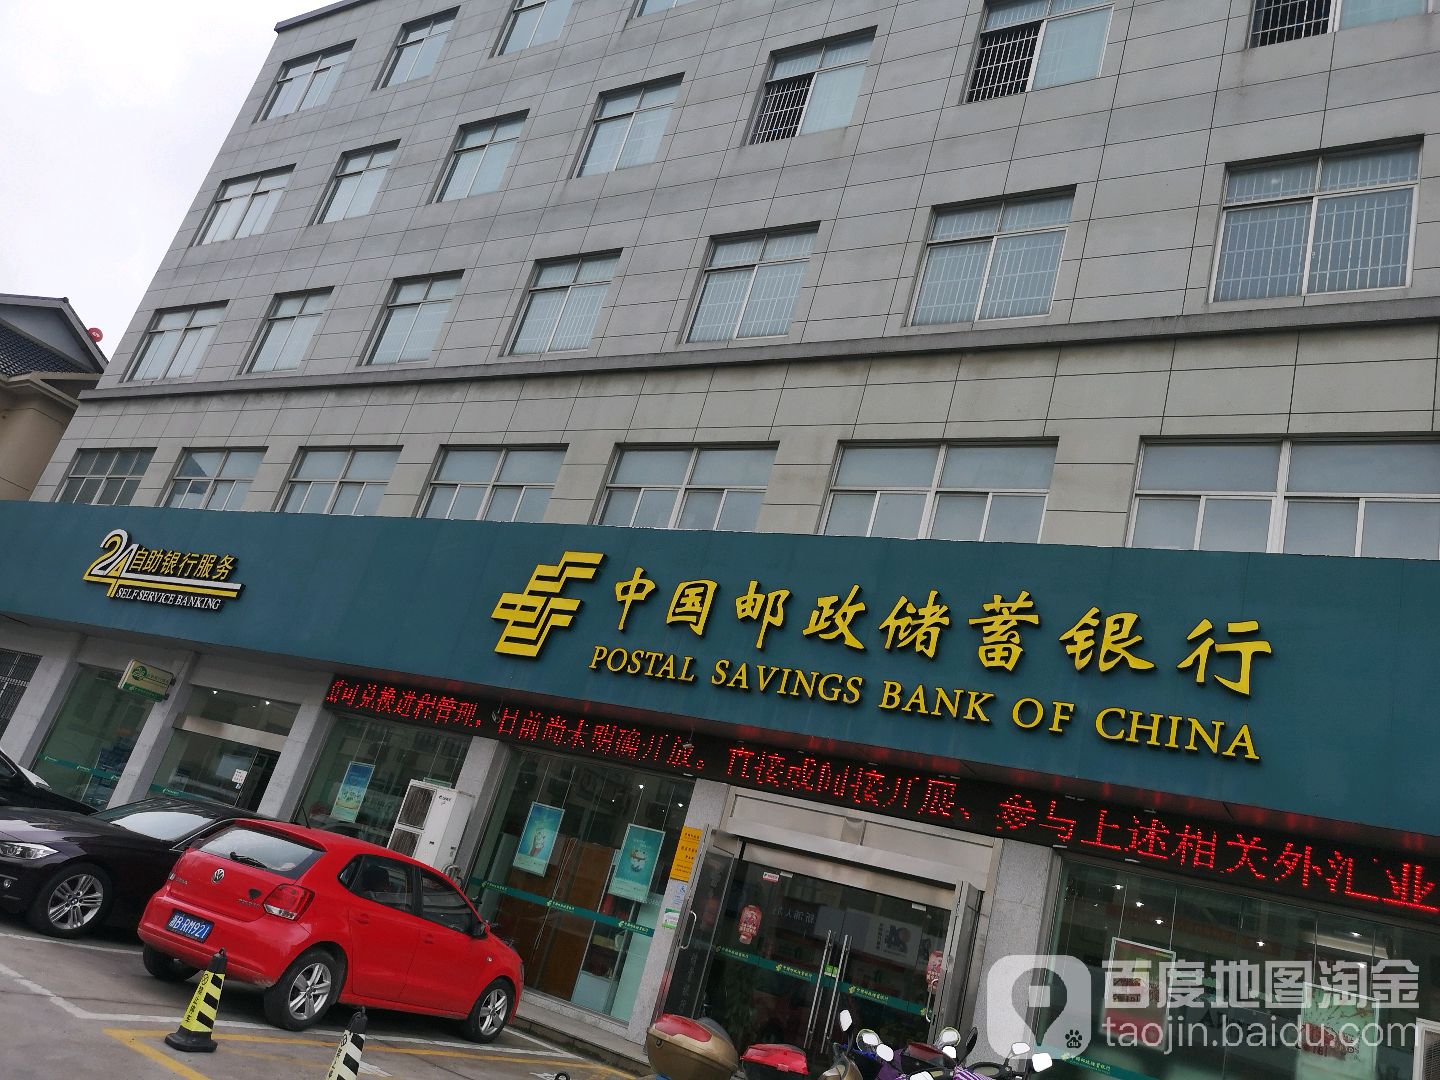 中國郵政儲蓄銀行24小時自助銀行(新浦支行)